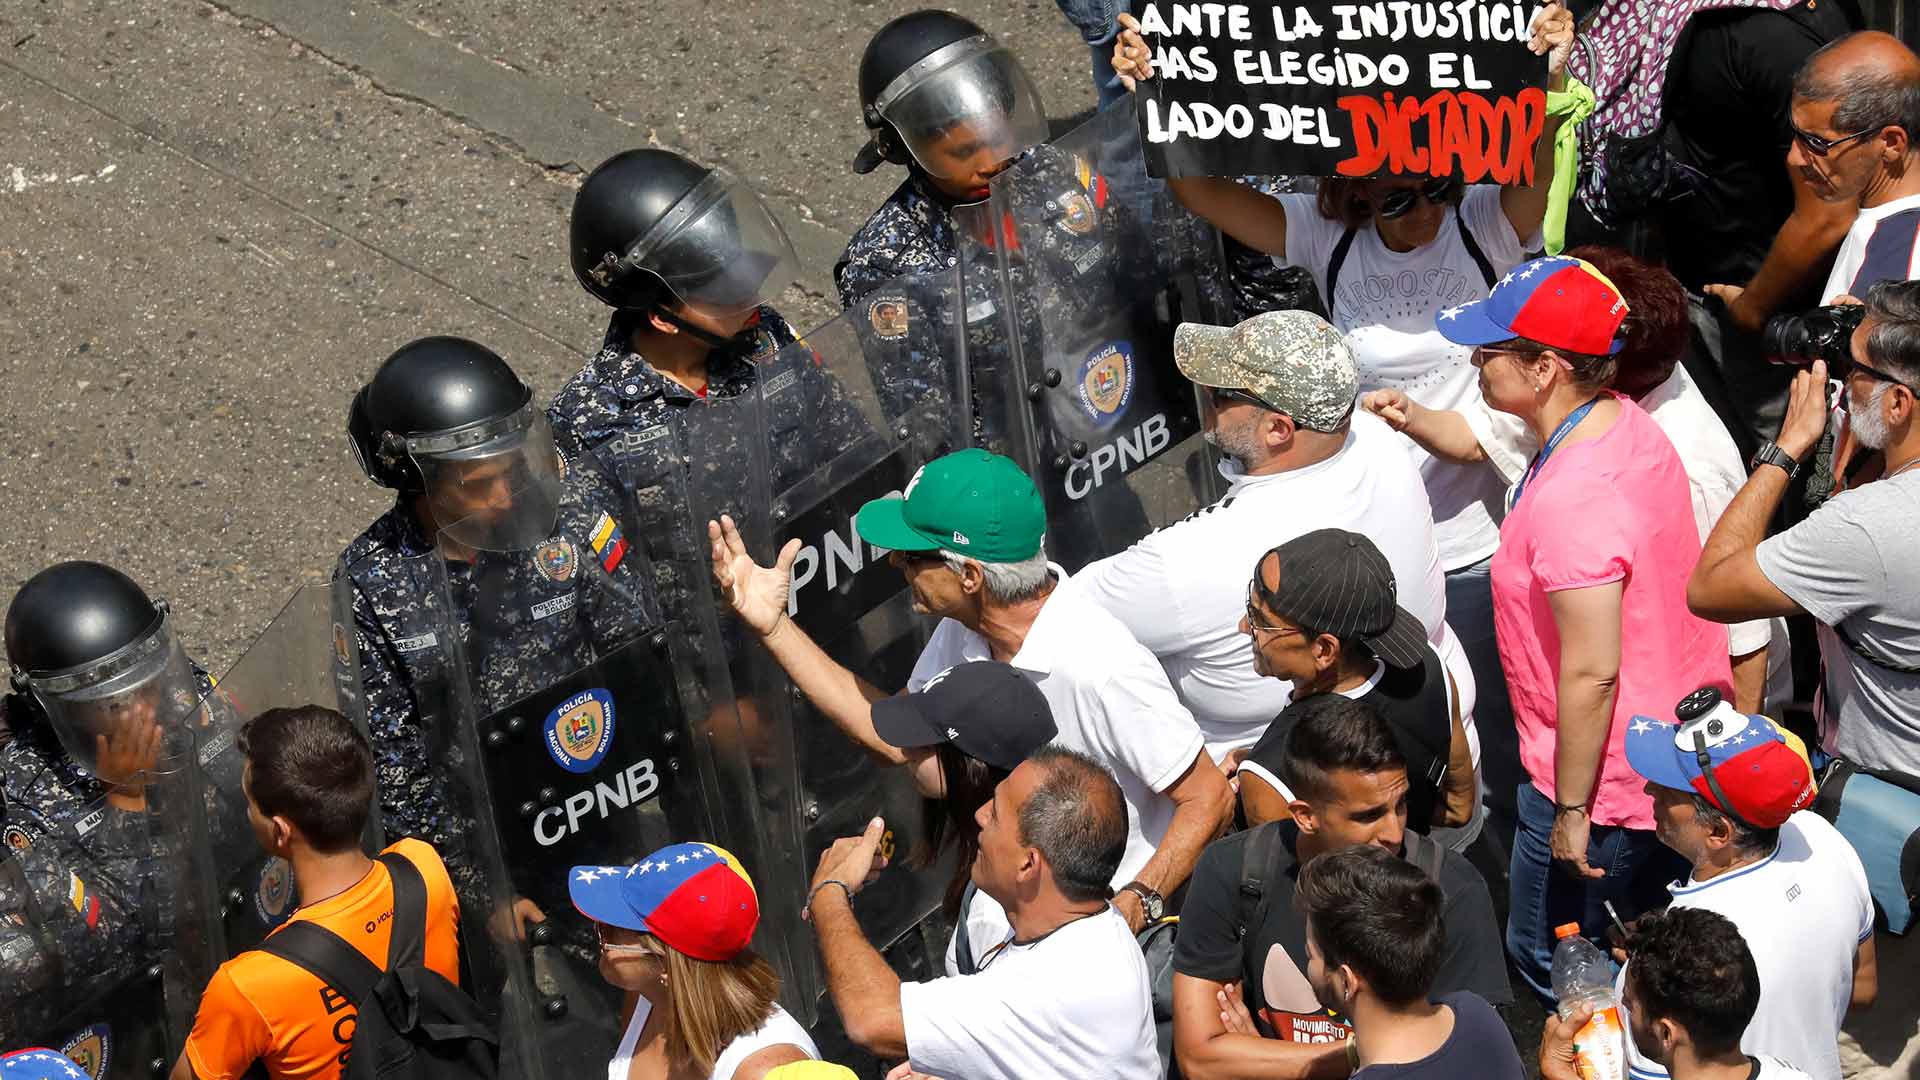 La Policía disuelve con gases lacrimógenos una manifestación opositora en Venezuela